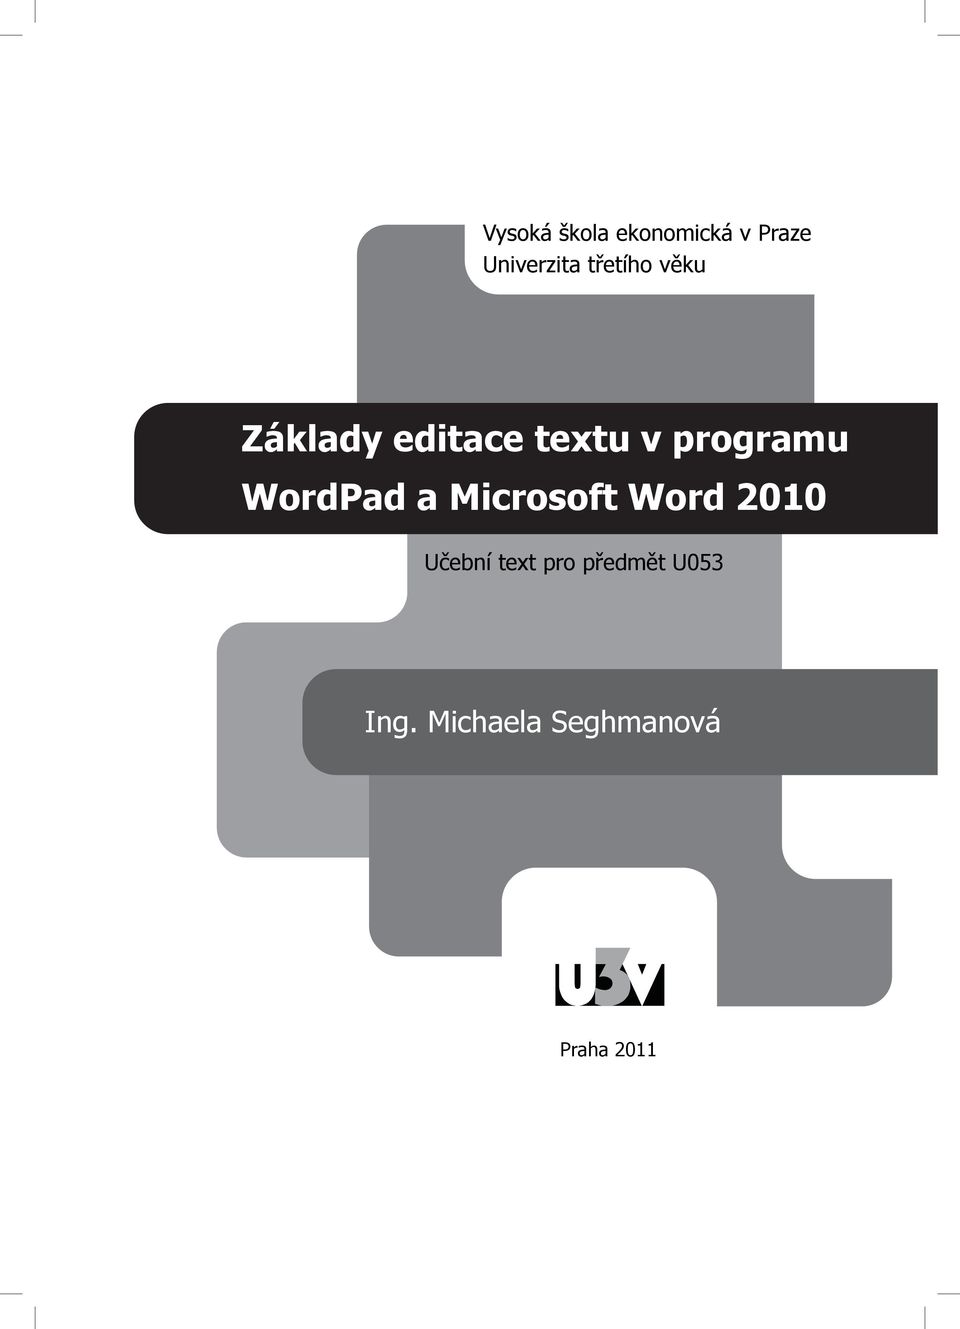 WordPad a Microsoft Word 2010 Učební text pro